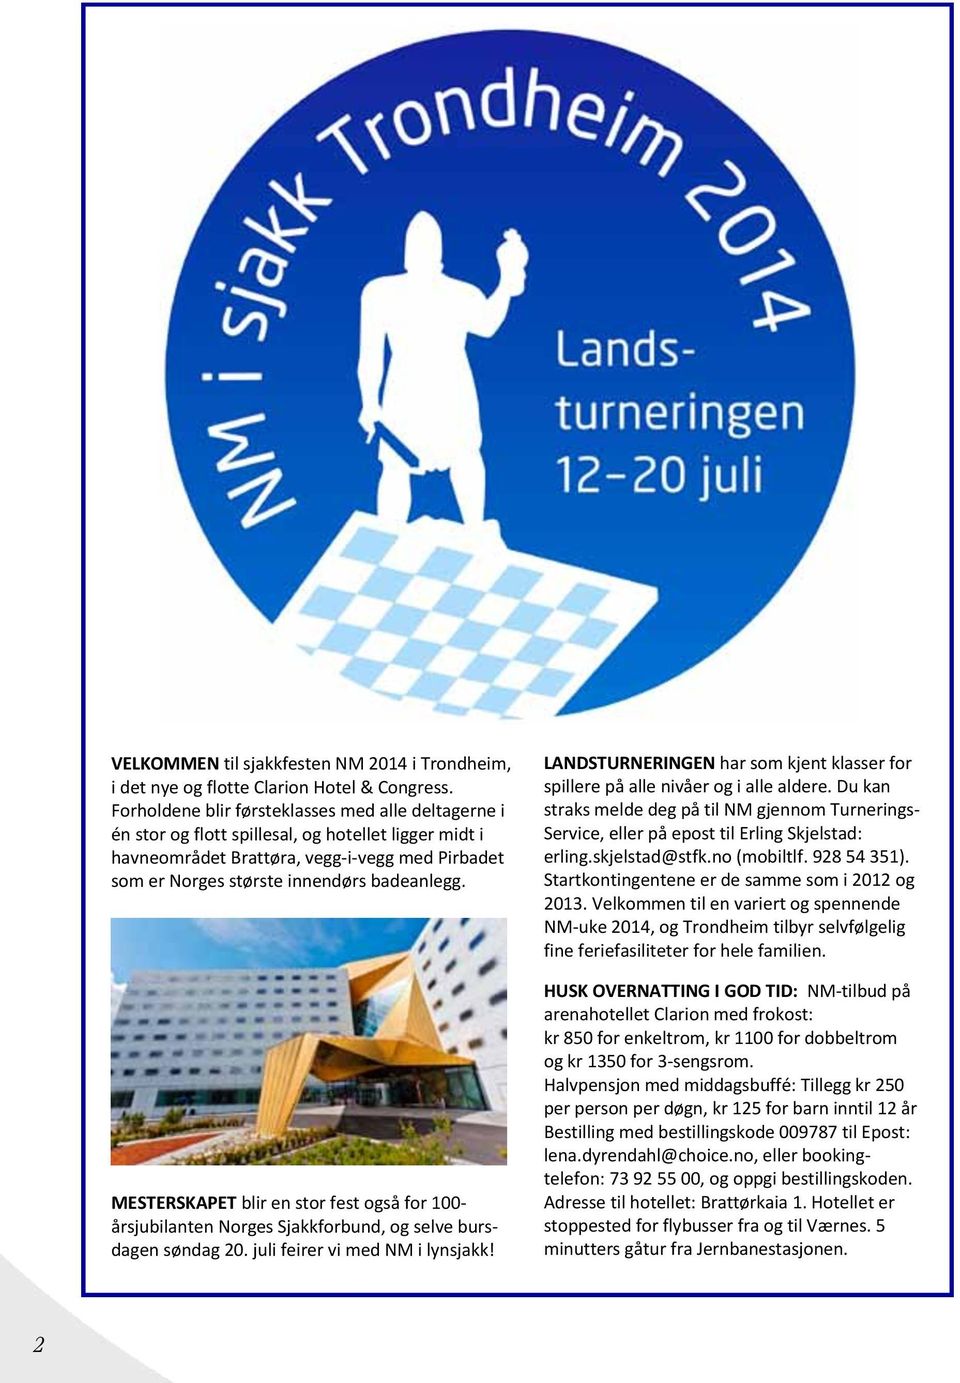 MESTERSKAPET blir en stor fest også for 100- årsjubilanten Norges Sjakkforbund, og selve bursdagen søndag 20. juli feirer vi med NM i lynsjakk!